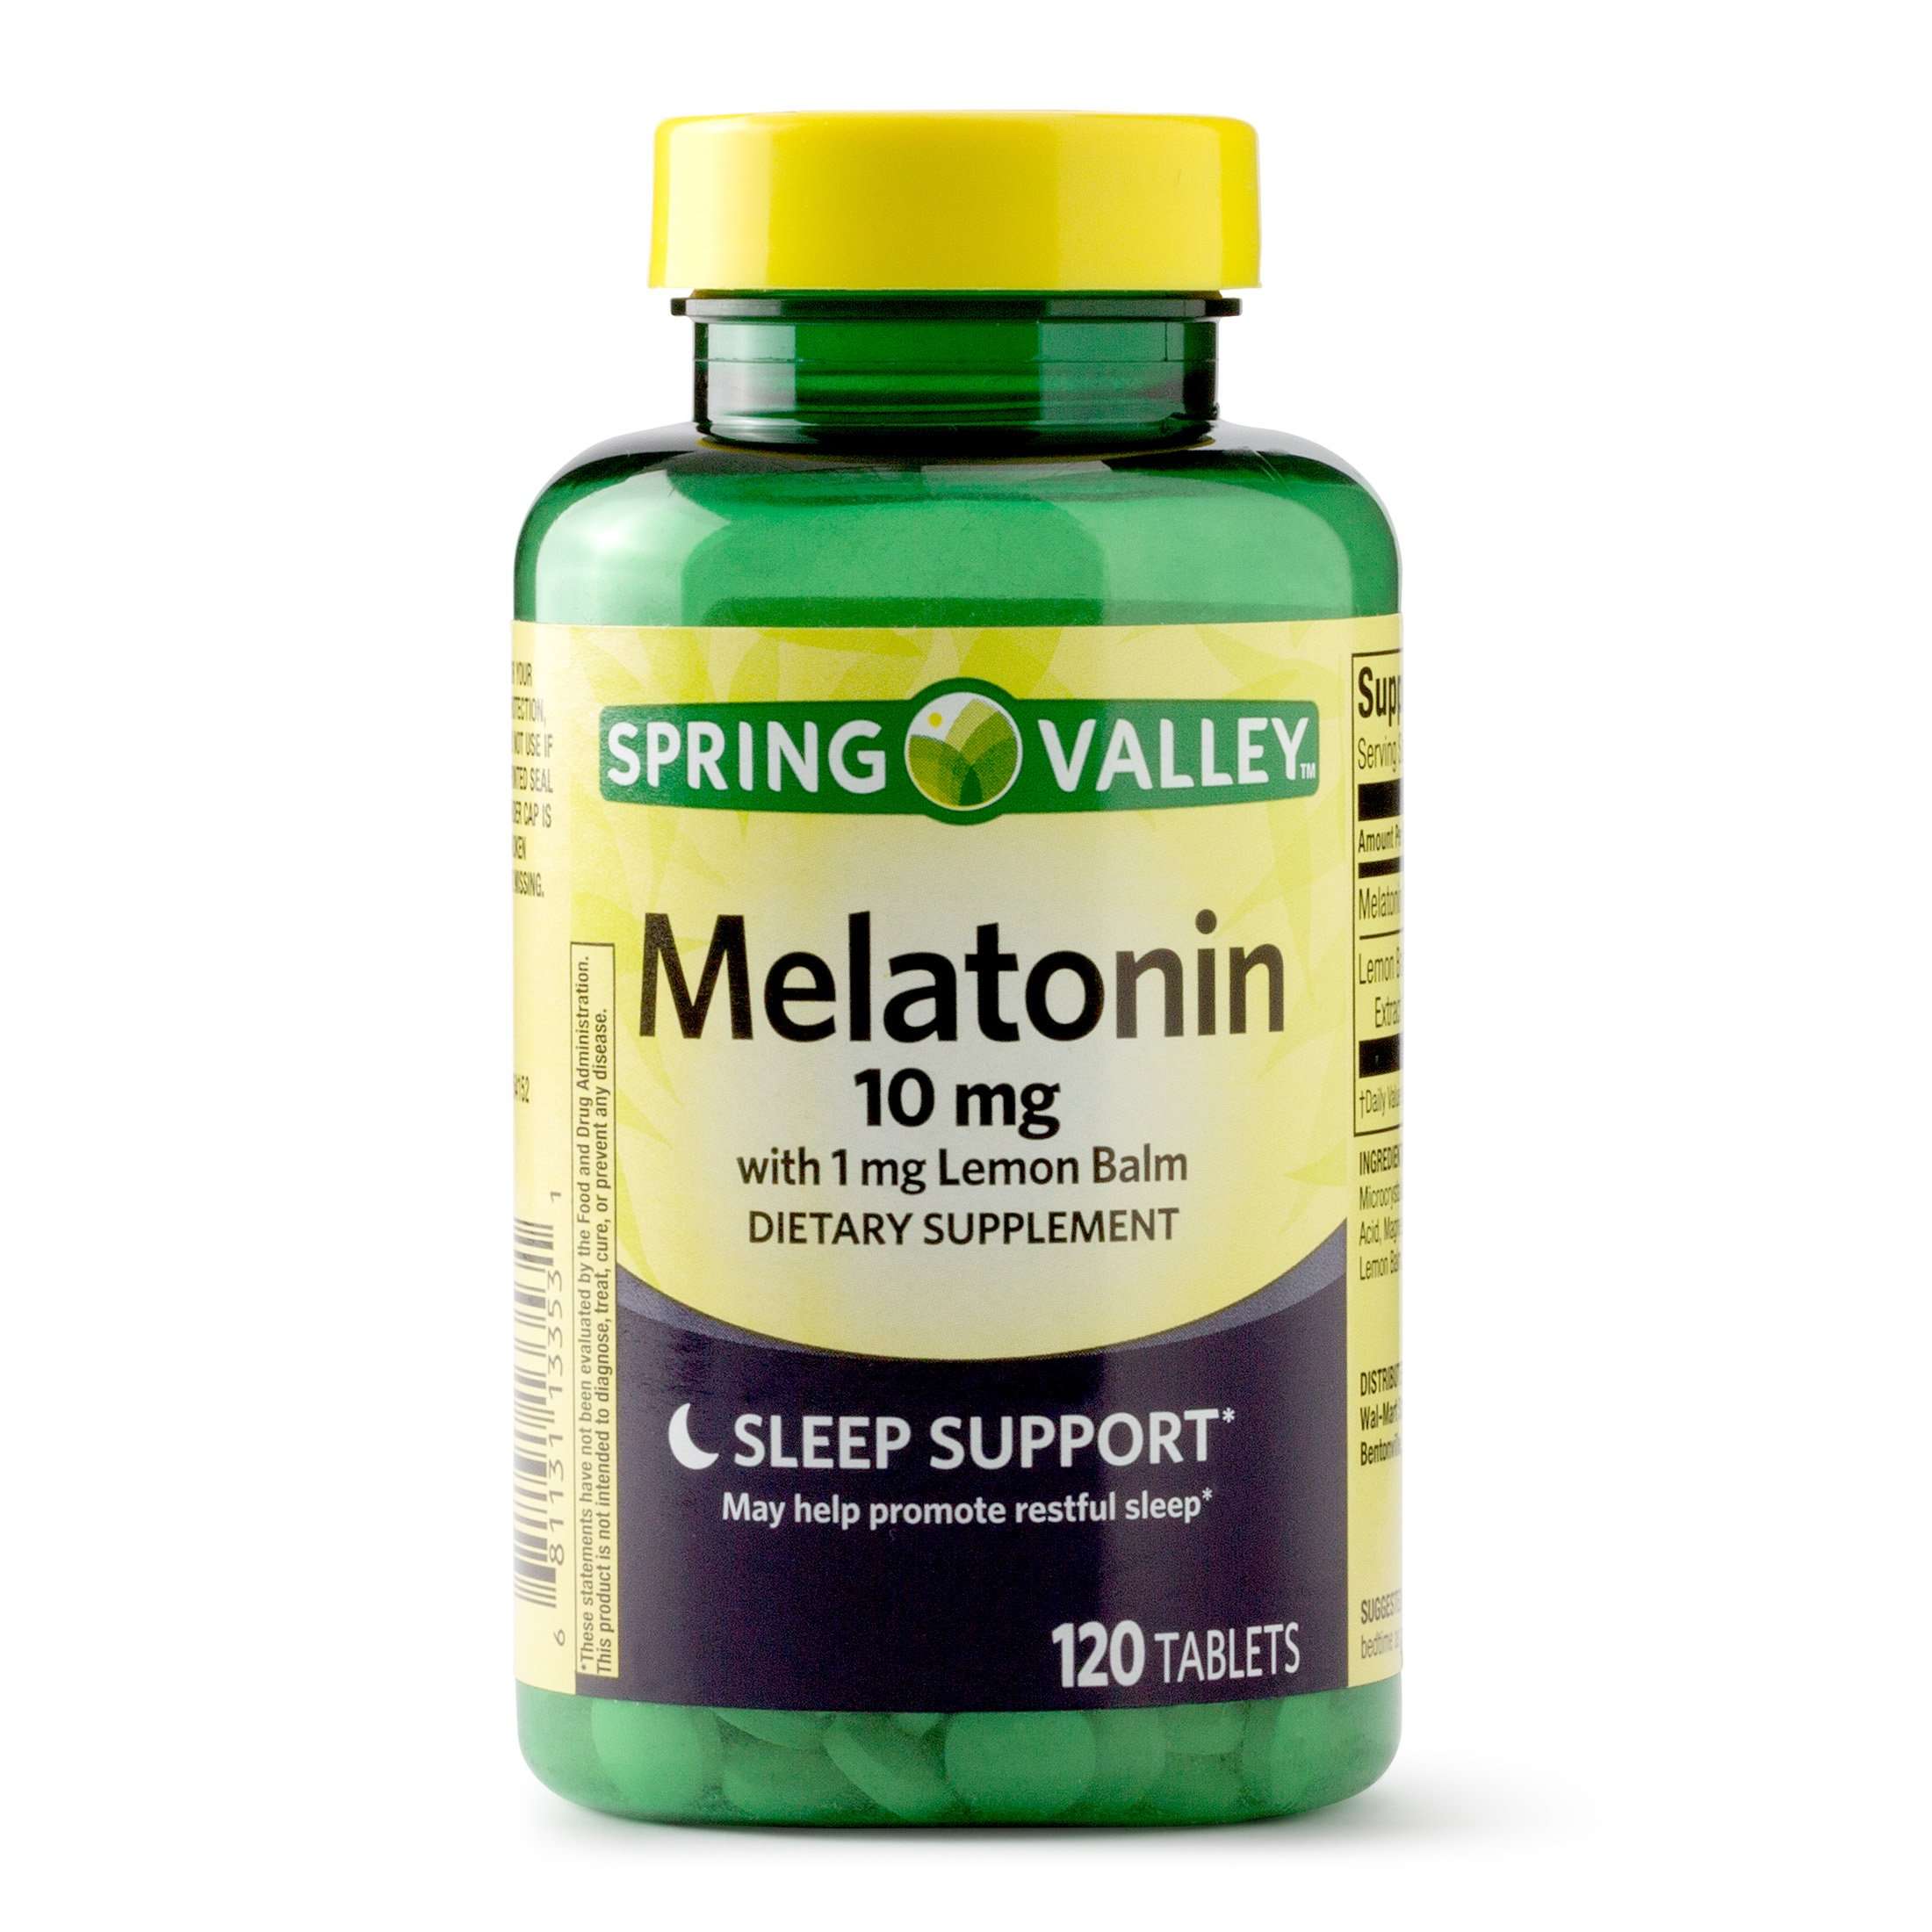 Spring Valley Melatonin Tablets, 10mg, 120 Count